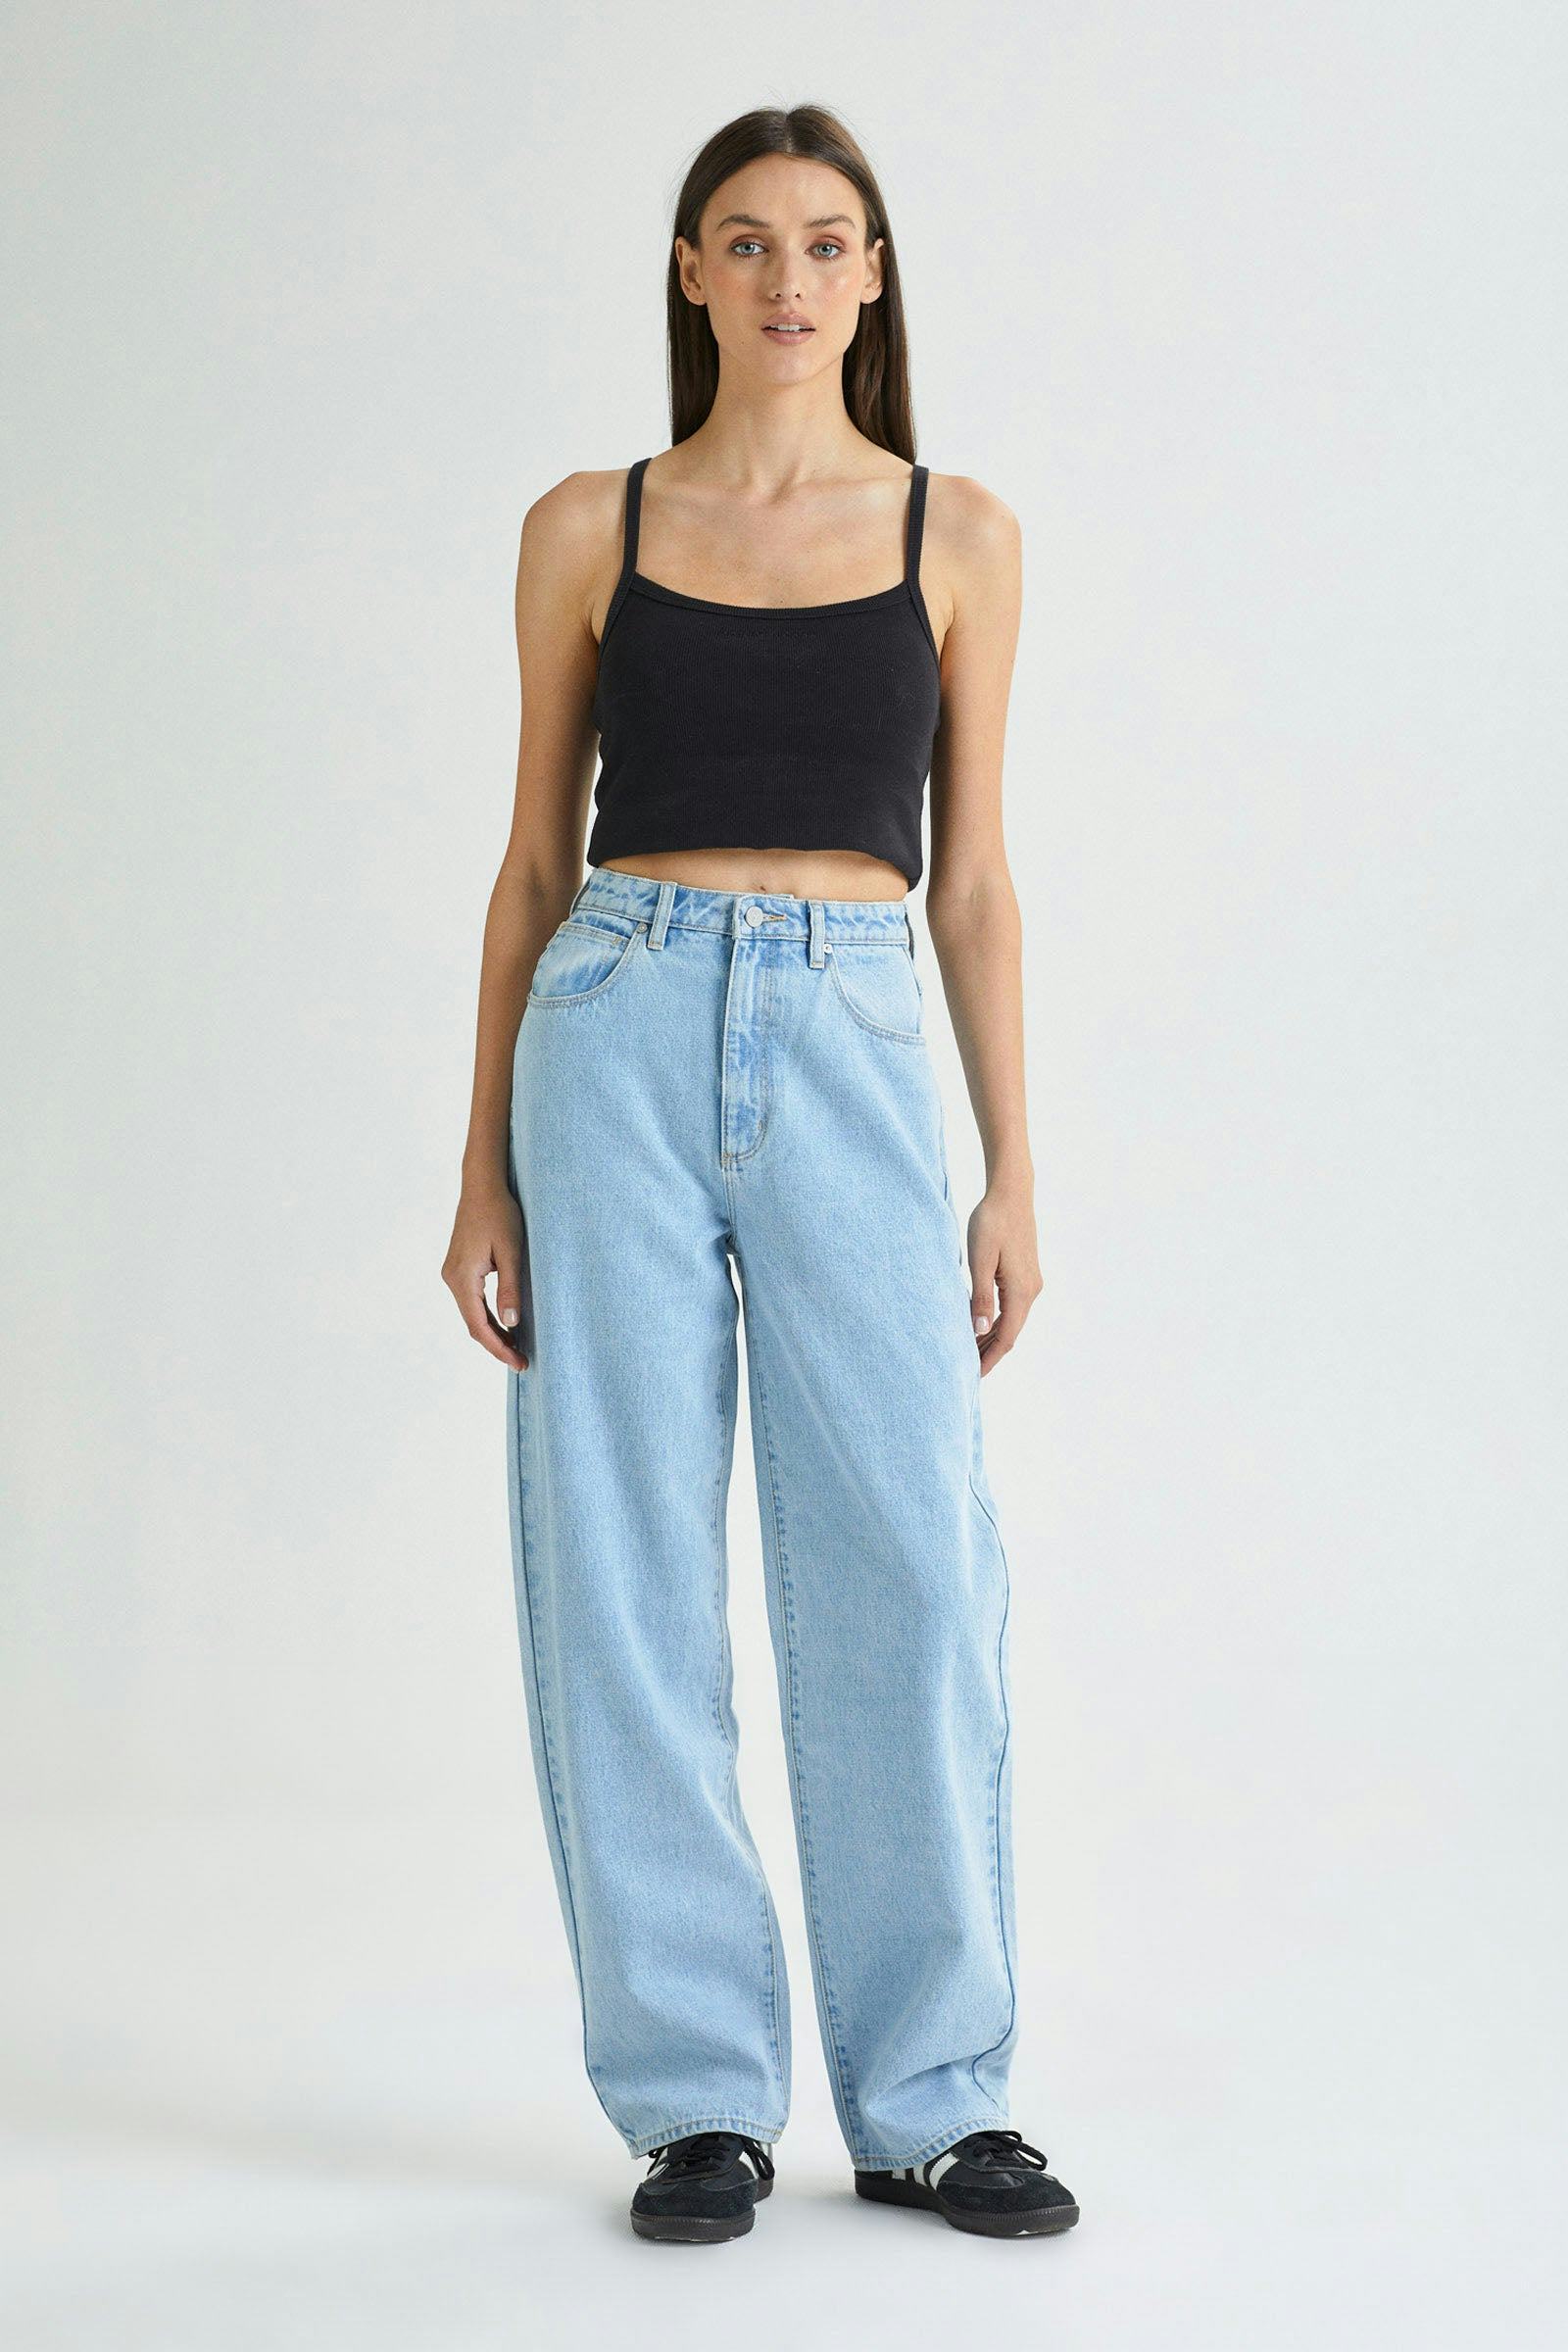 Buy Carrie Jean Walkaway Online | Abrand Jeans